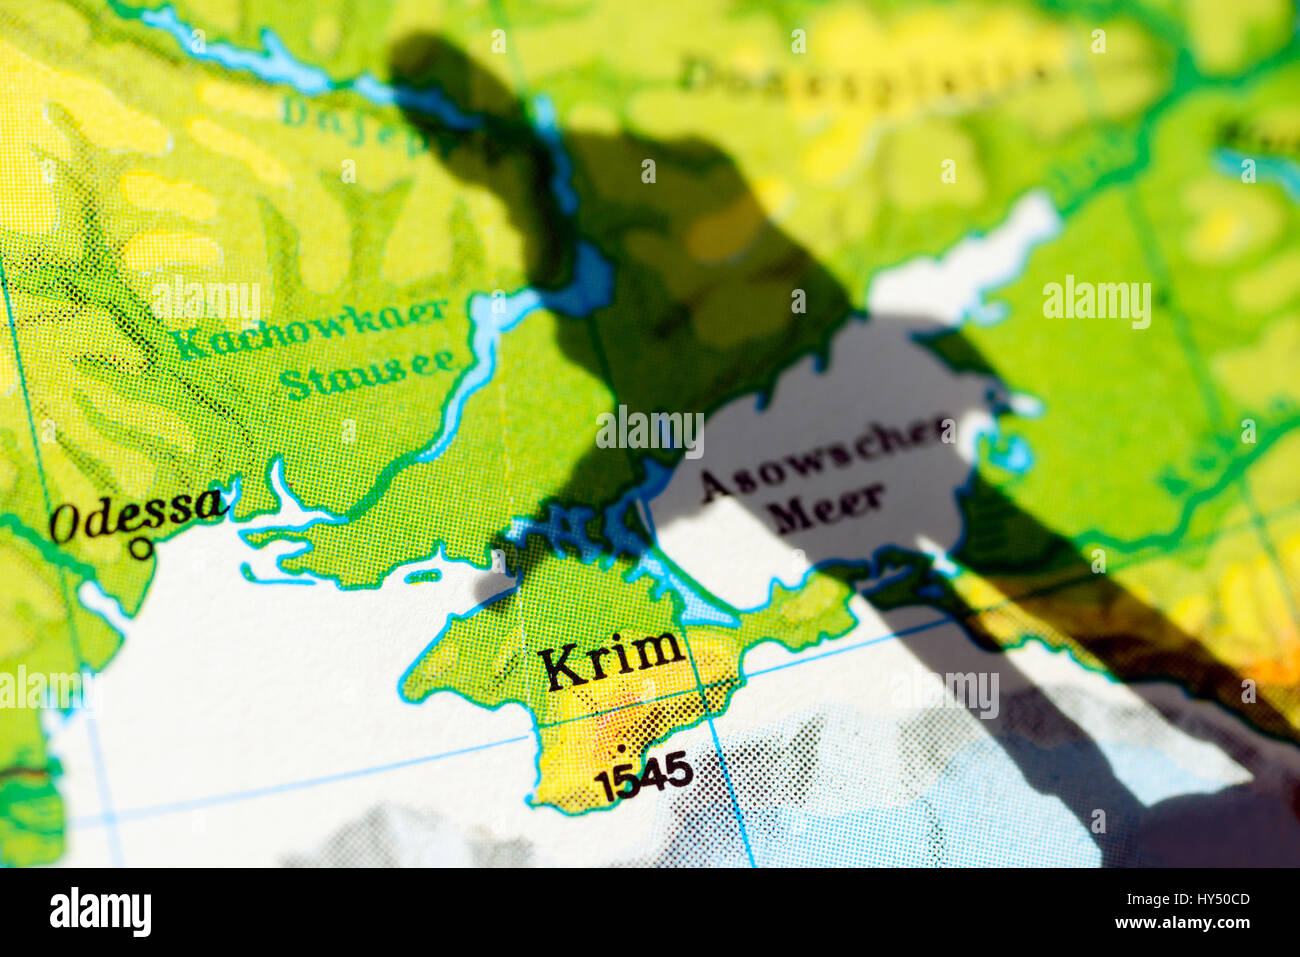 The Crimea on a map and shade of a soldier, Crimea crisis, Die Krim auf einer Landkarte und Schatten eines Soldaten, Krim-Krise Stock Photo